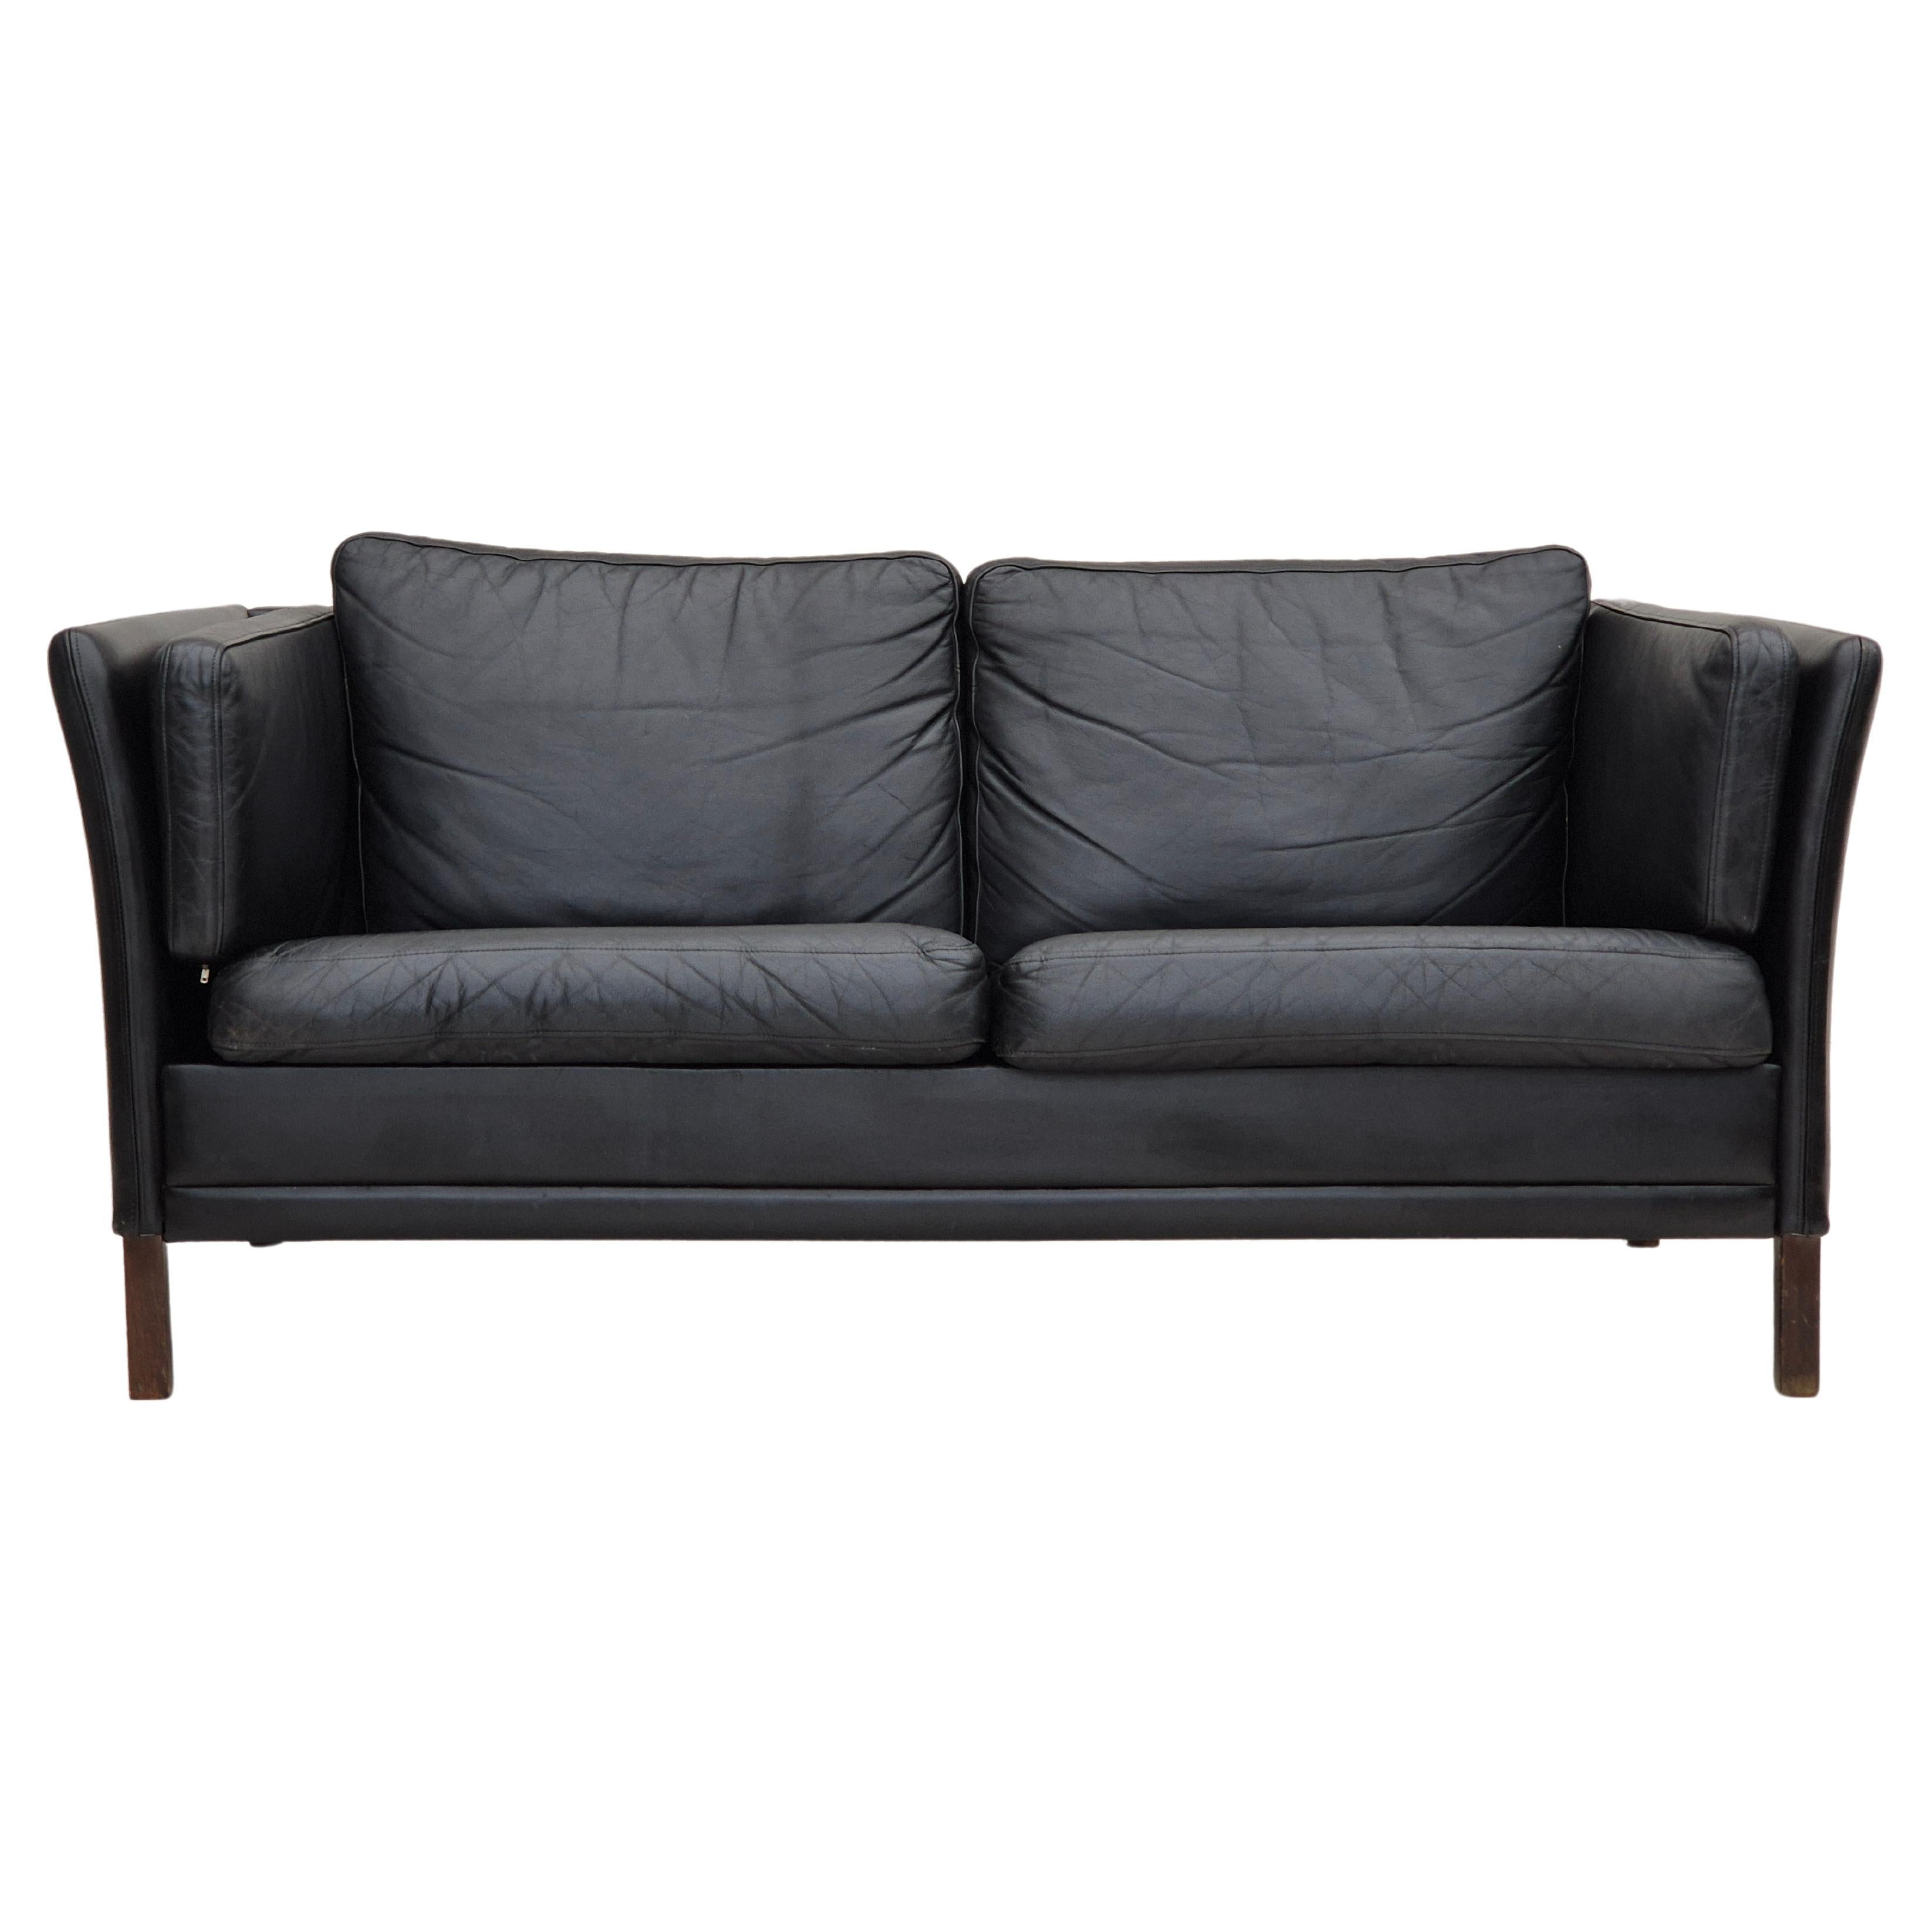 1960er Jahre, dänisches Design von Mogens Hansen, 2-sitziges Sofa im Originalzustand.